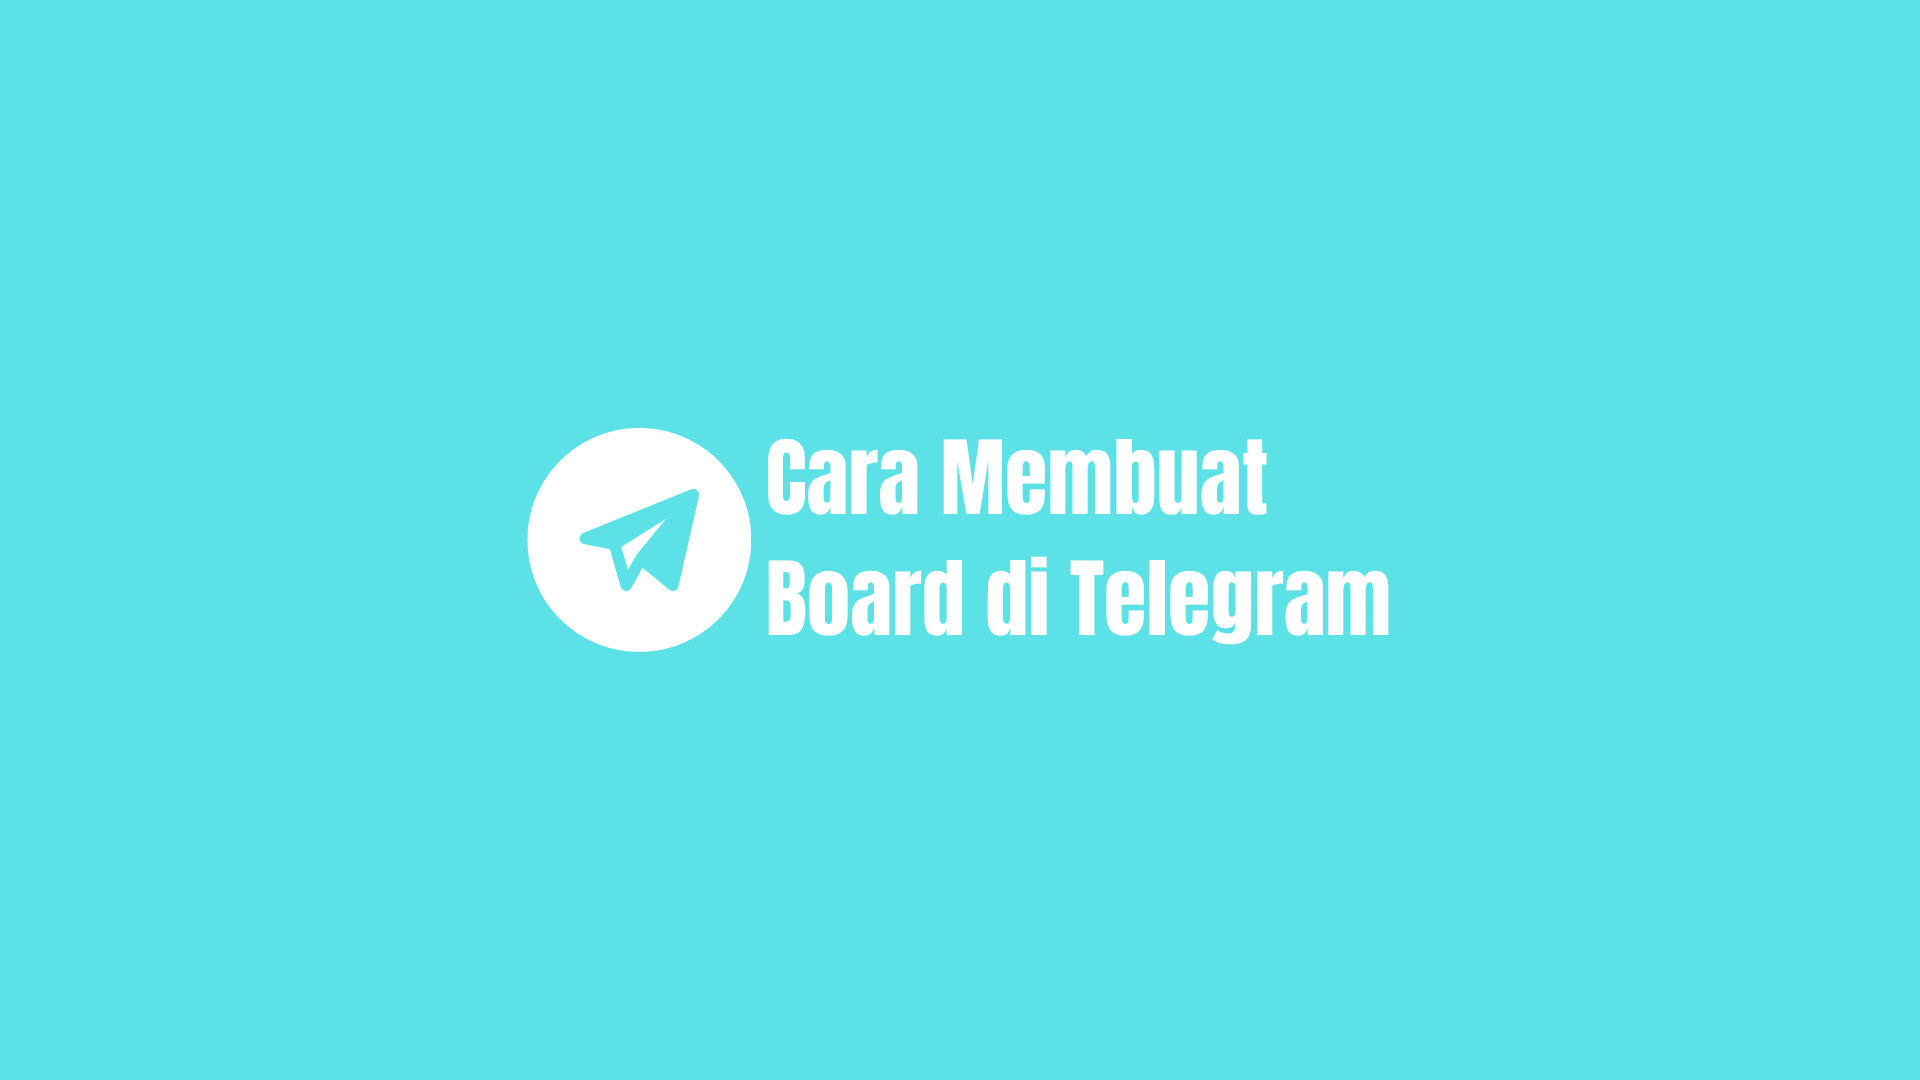 cara membuat board di telegram